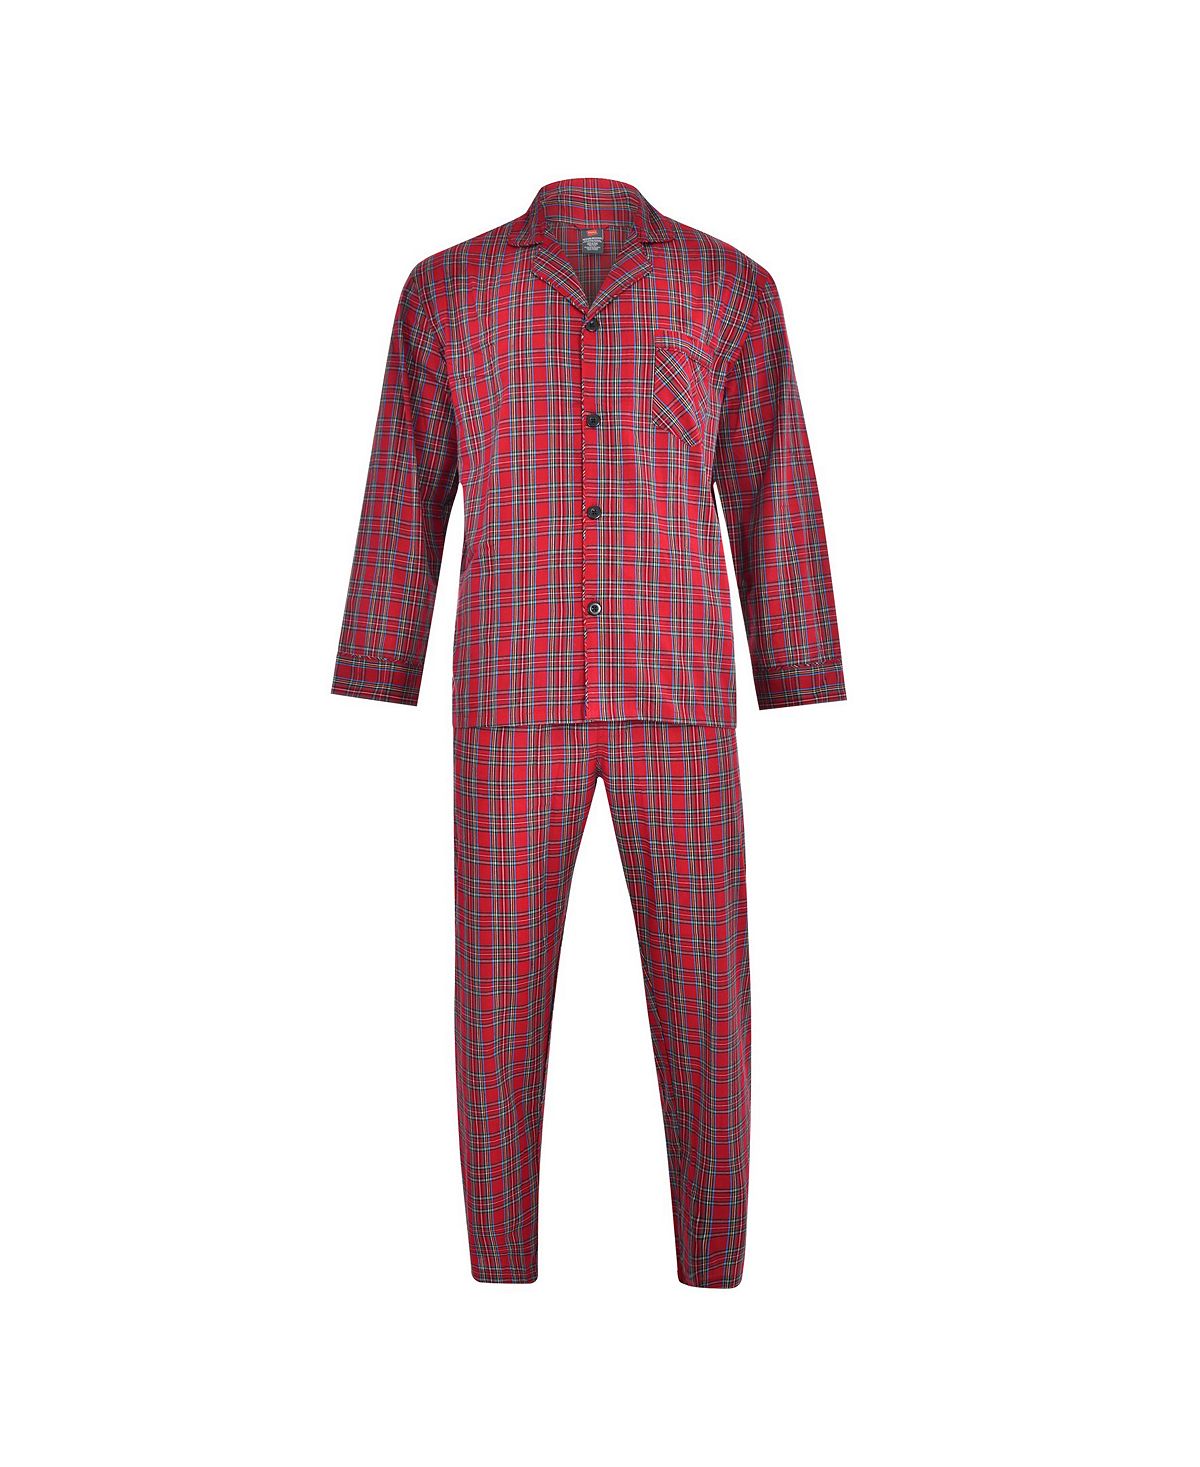 Мужской пижамный комплект из ткани Hanes большого и высокого размера из ткани ПВХ Hanes Platinum пижамный комплект big